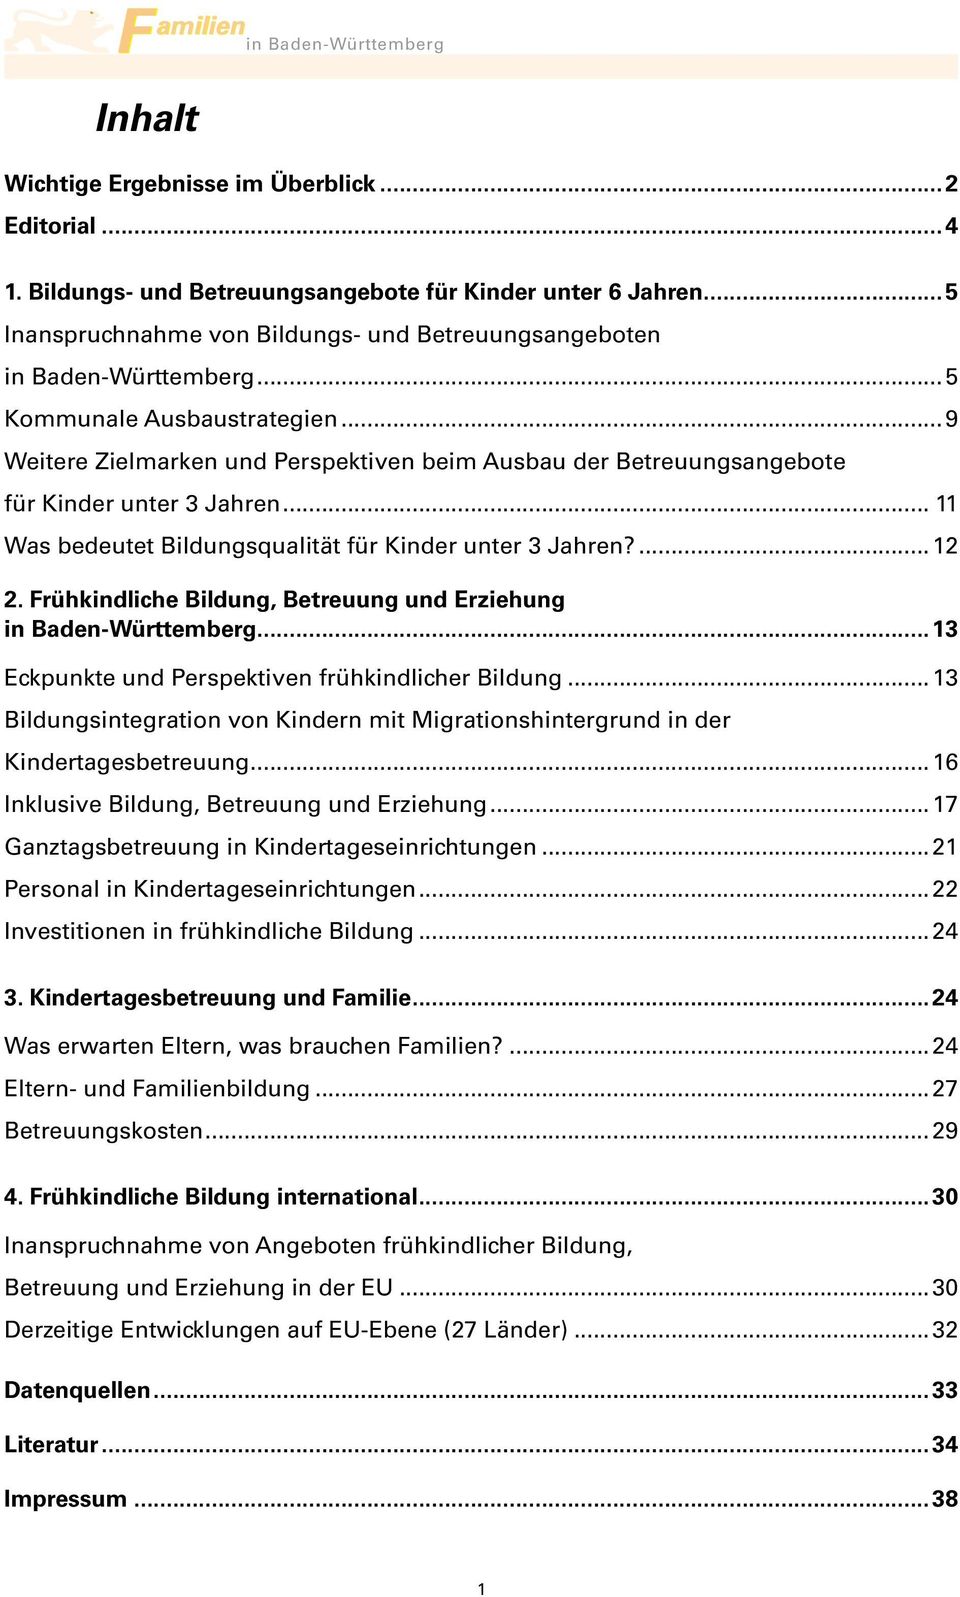 Frühkindliche Bildung, Betreuung und Erziehung in Baden-Württemberg...13 Eckpunkte und Perspektiven frühkindlicher Bildung.